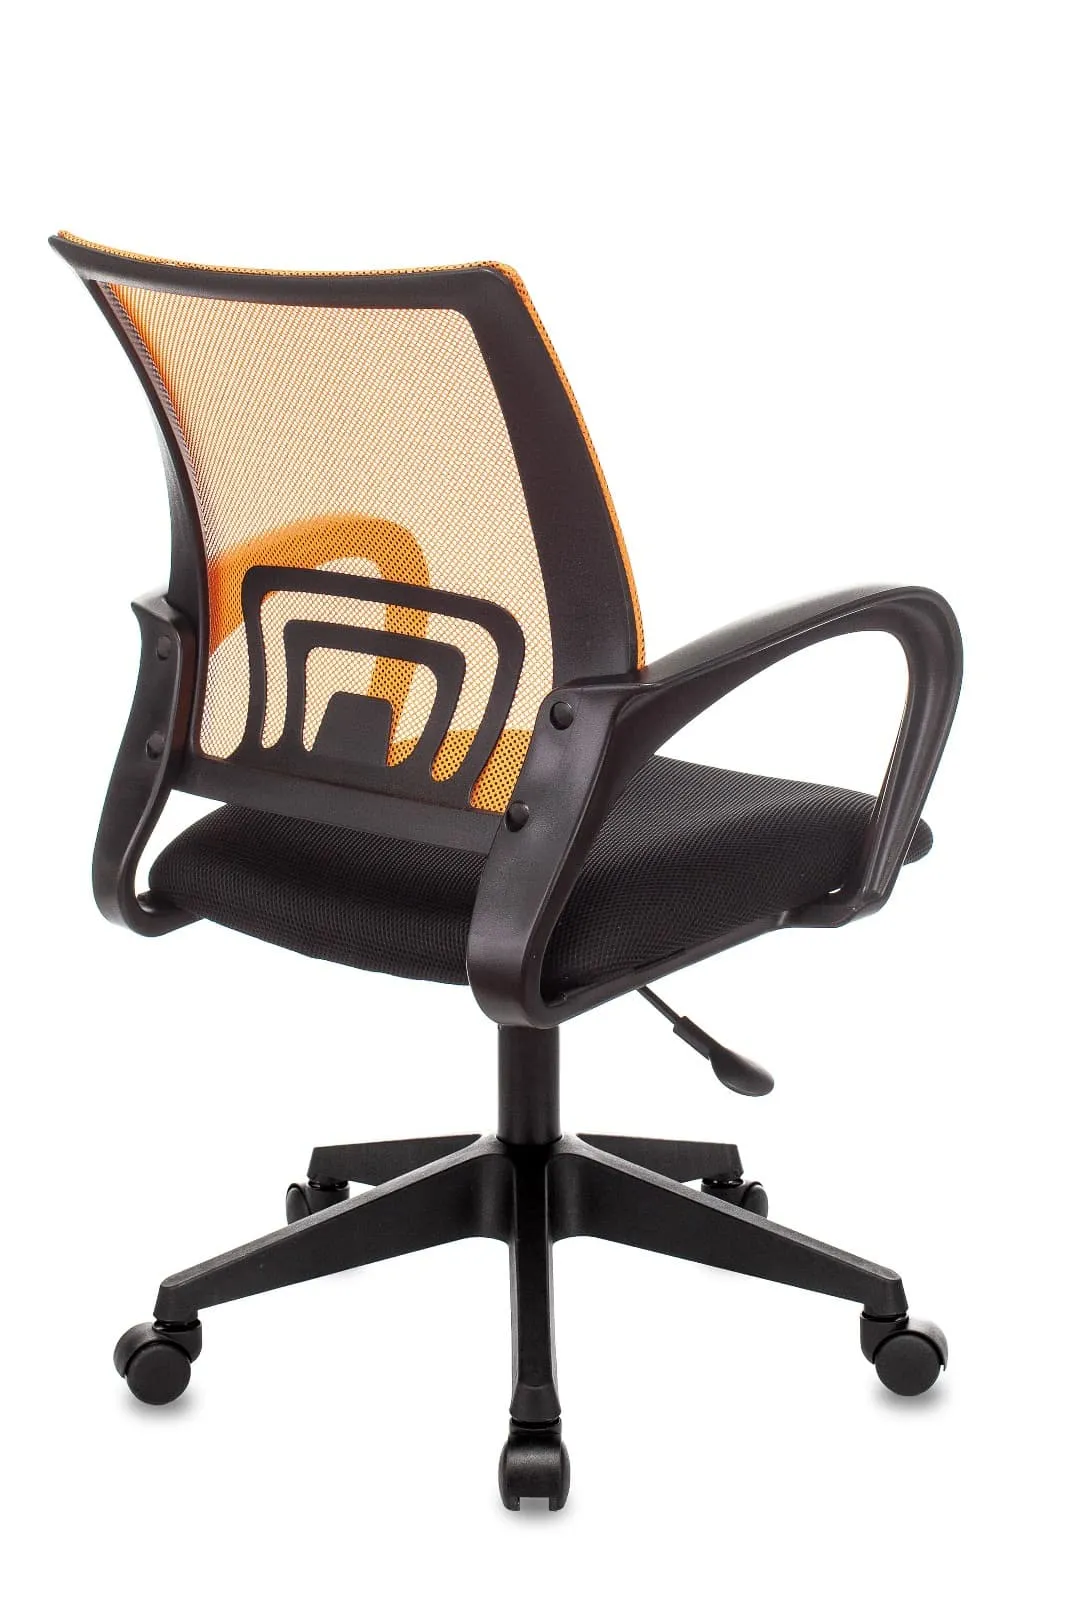 Кресло офисное TopChairs ST-Basic сетка / ткань оранжевый